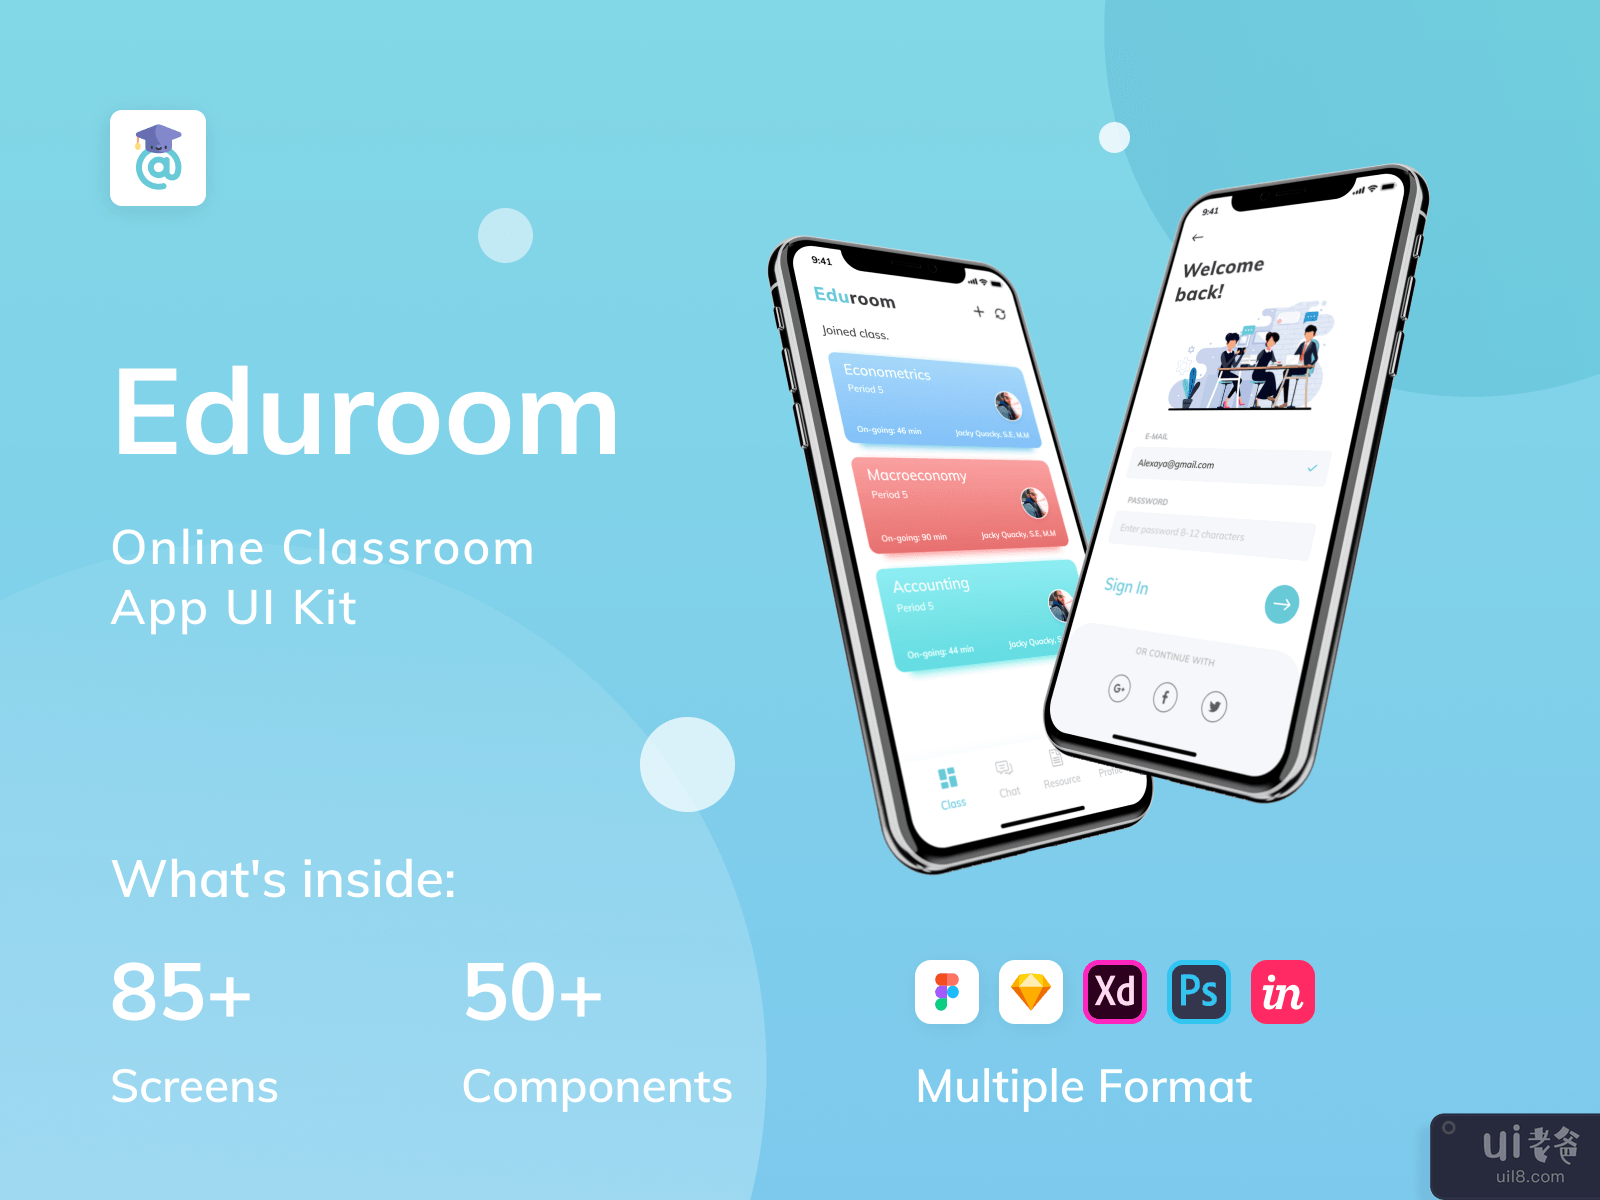 EduRoom - 在线课堂应用程序 UI 工具包（第 7 部分）(EduRoom - Online Class Room App UI Kit (Part 7))插图7